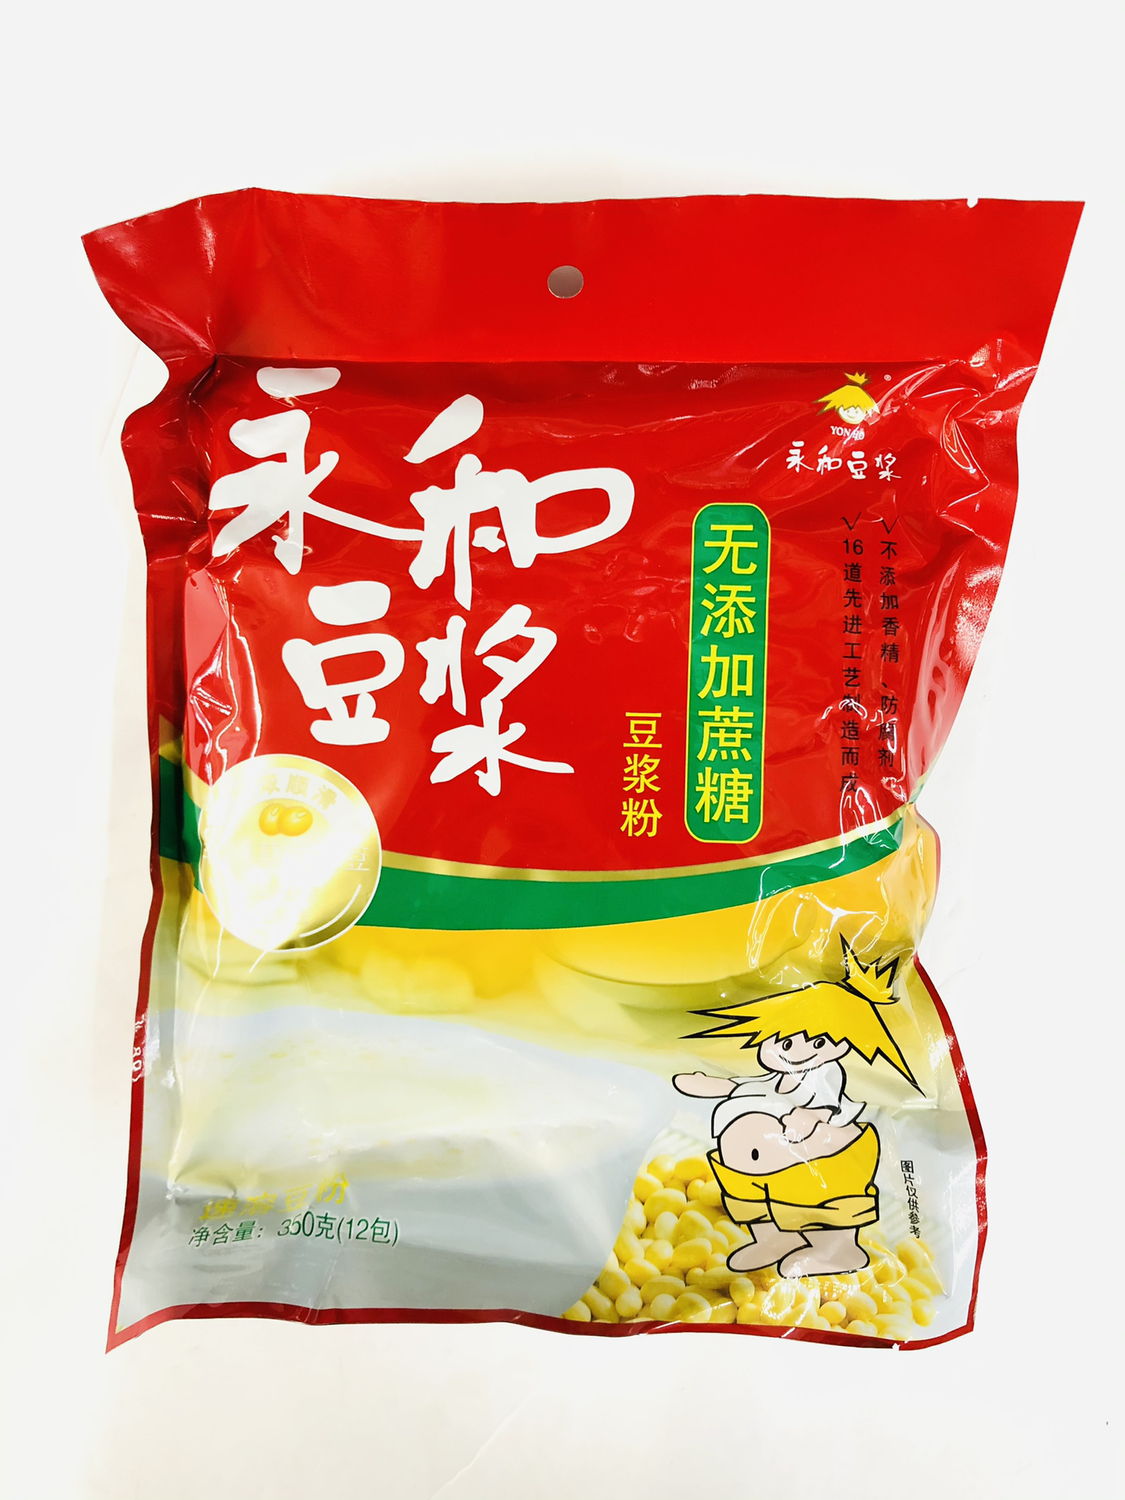 GROC【杂货】永和豆浆 无添加蔗糖豆浆粉 ~350g(12pk)